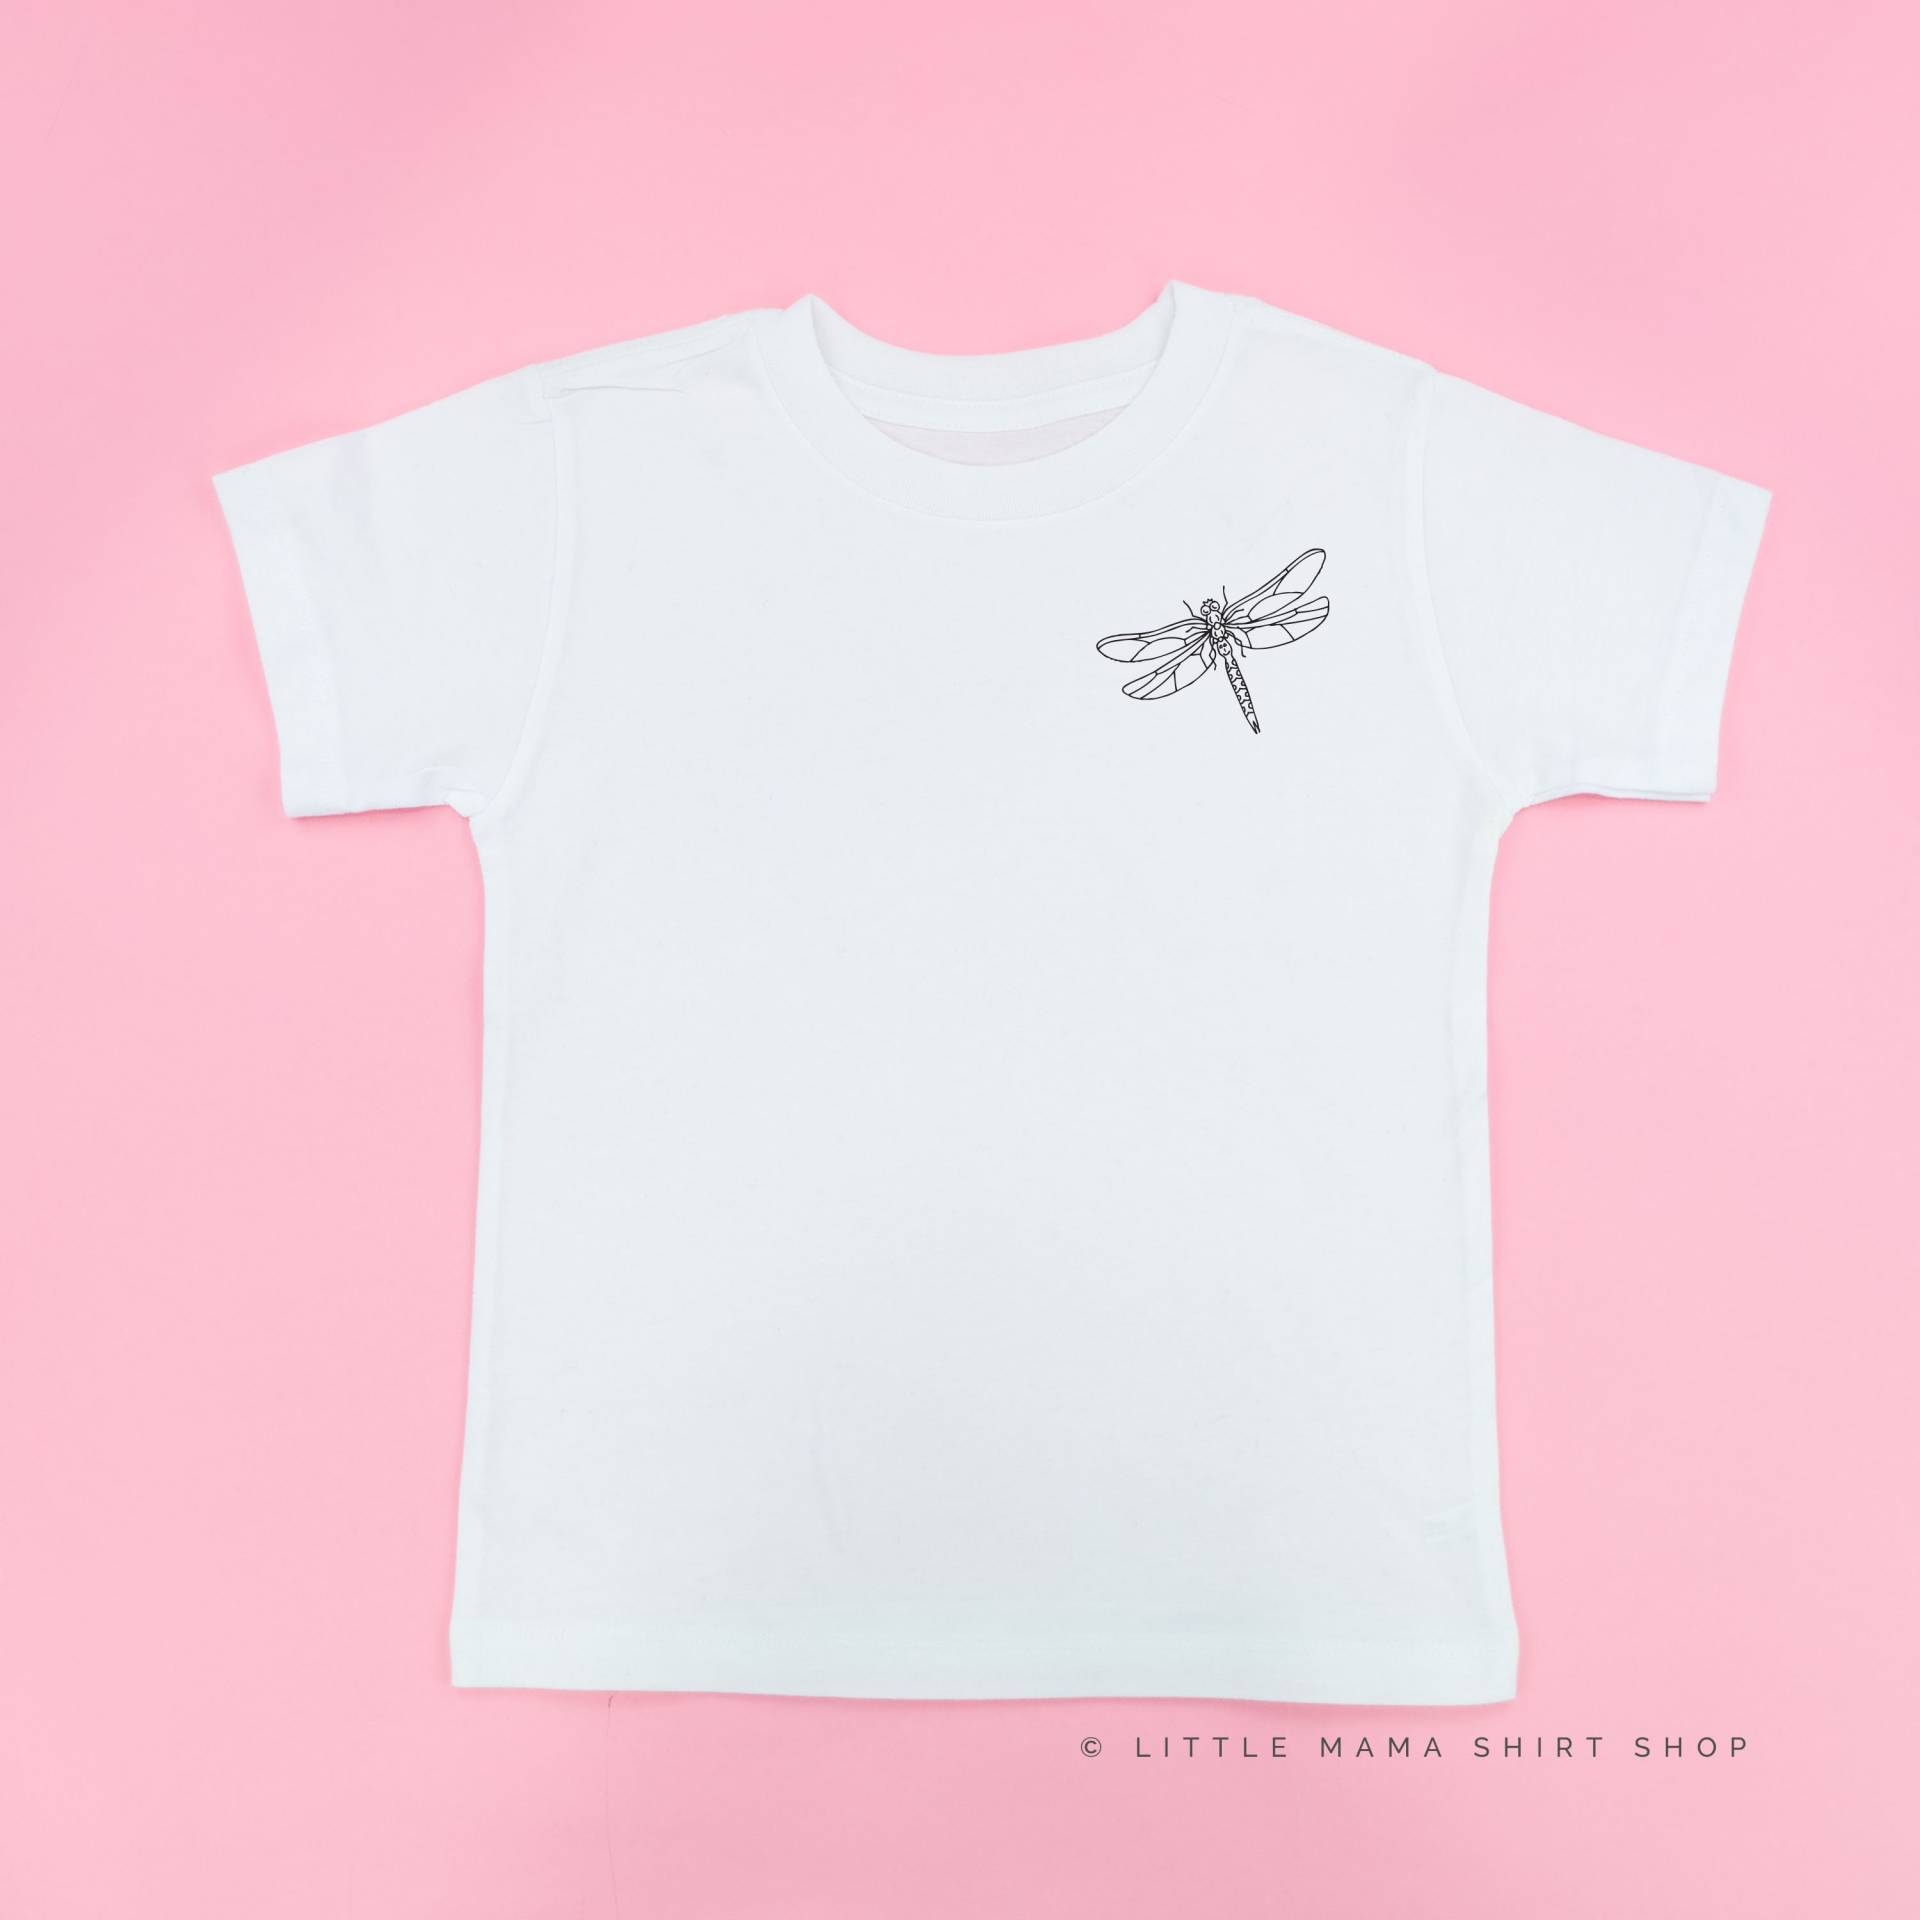 Libelle | Käfer Shirts Insektenhemden Junge Shirt Kinderhemden Grafik Tees Natur Kleinkind Mädchen von LittleMamaShirtShop